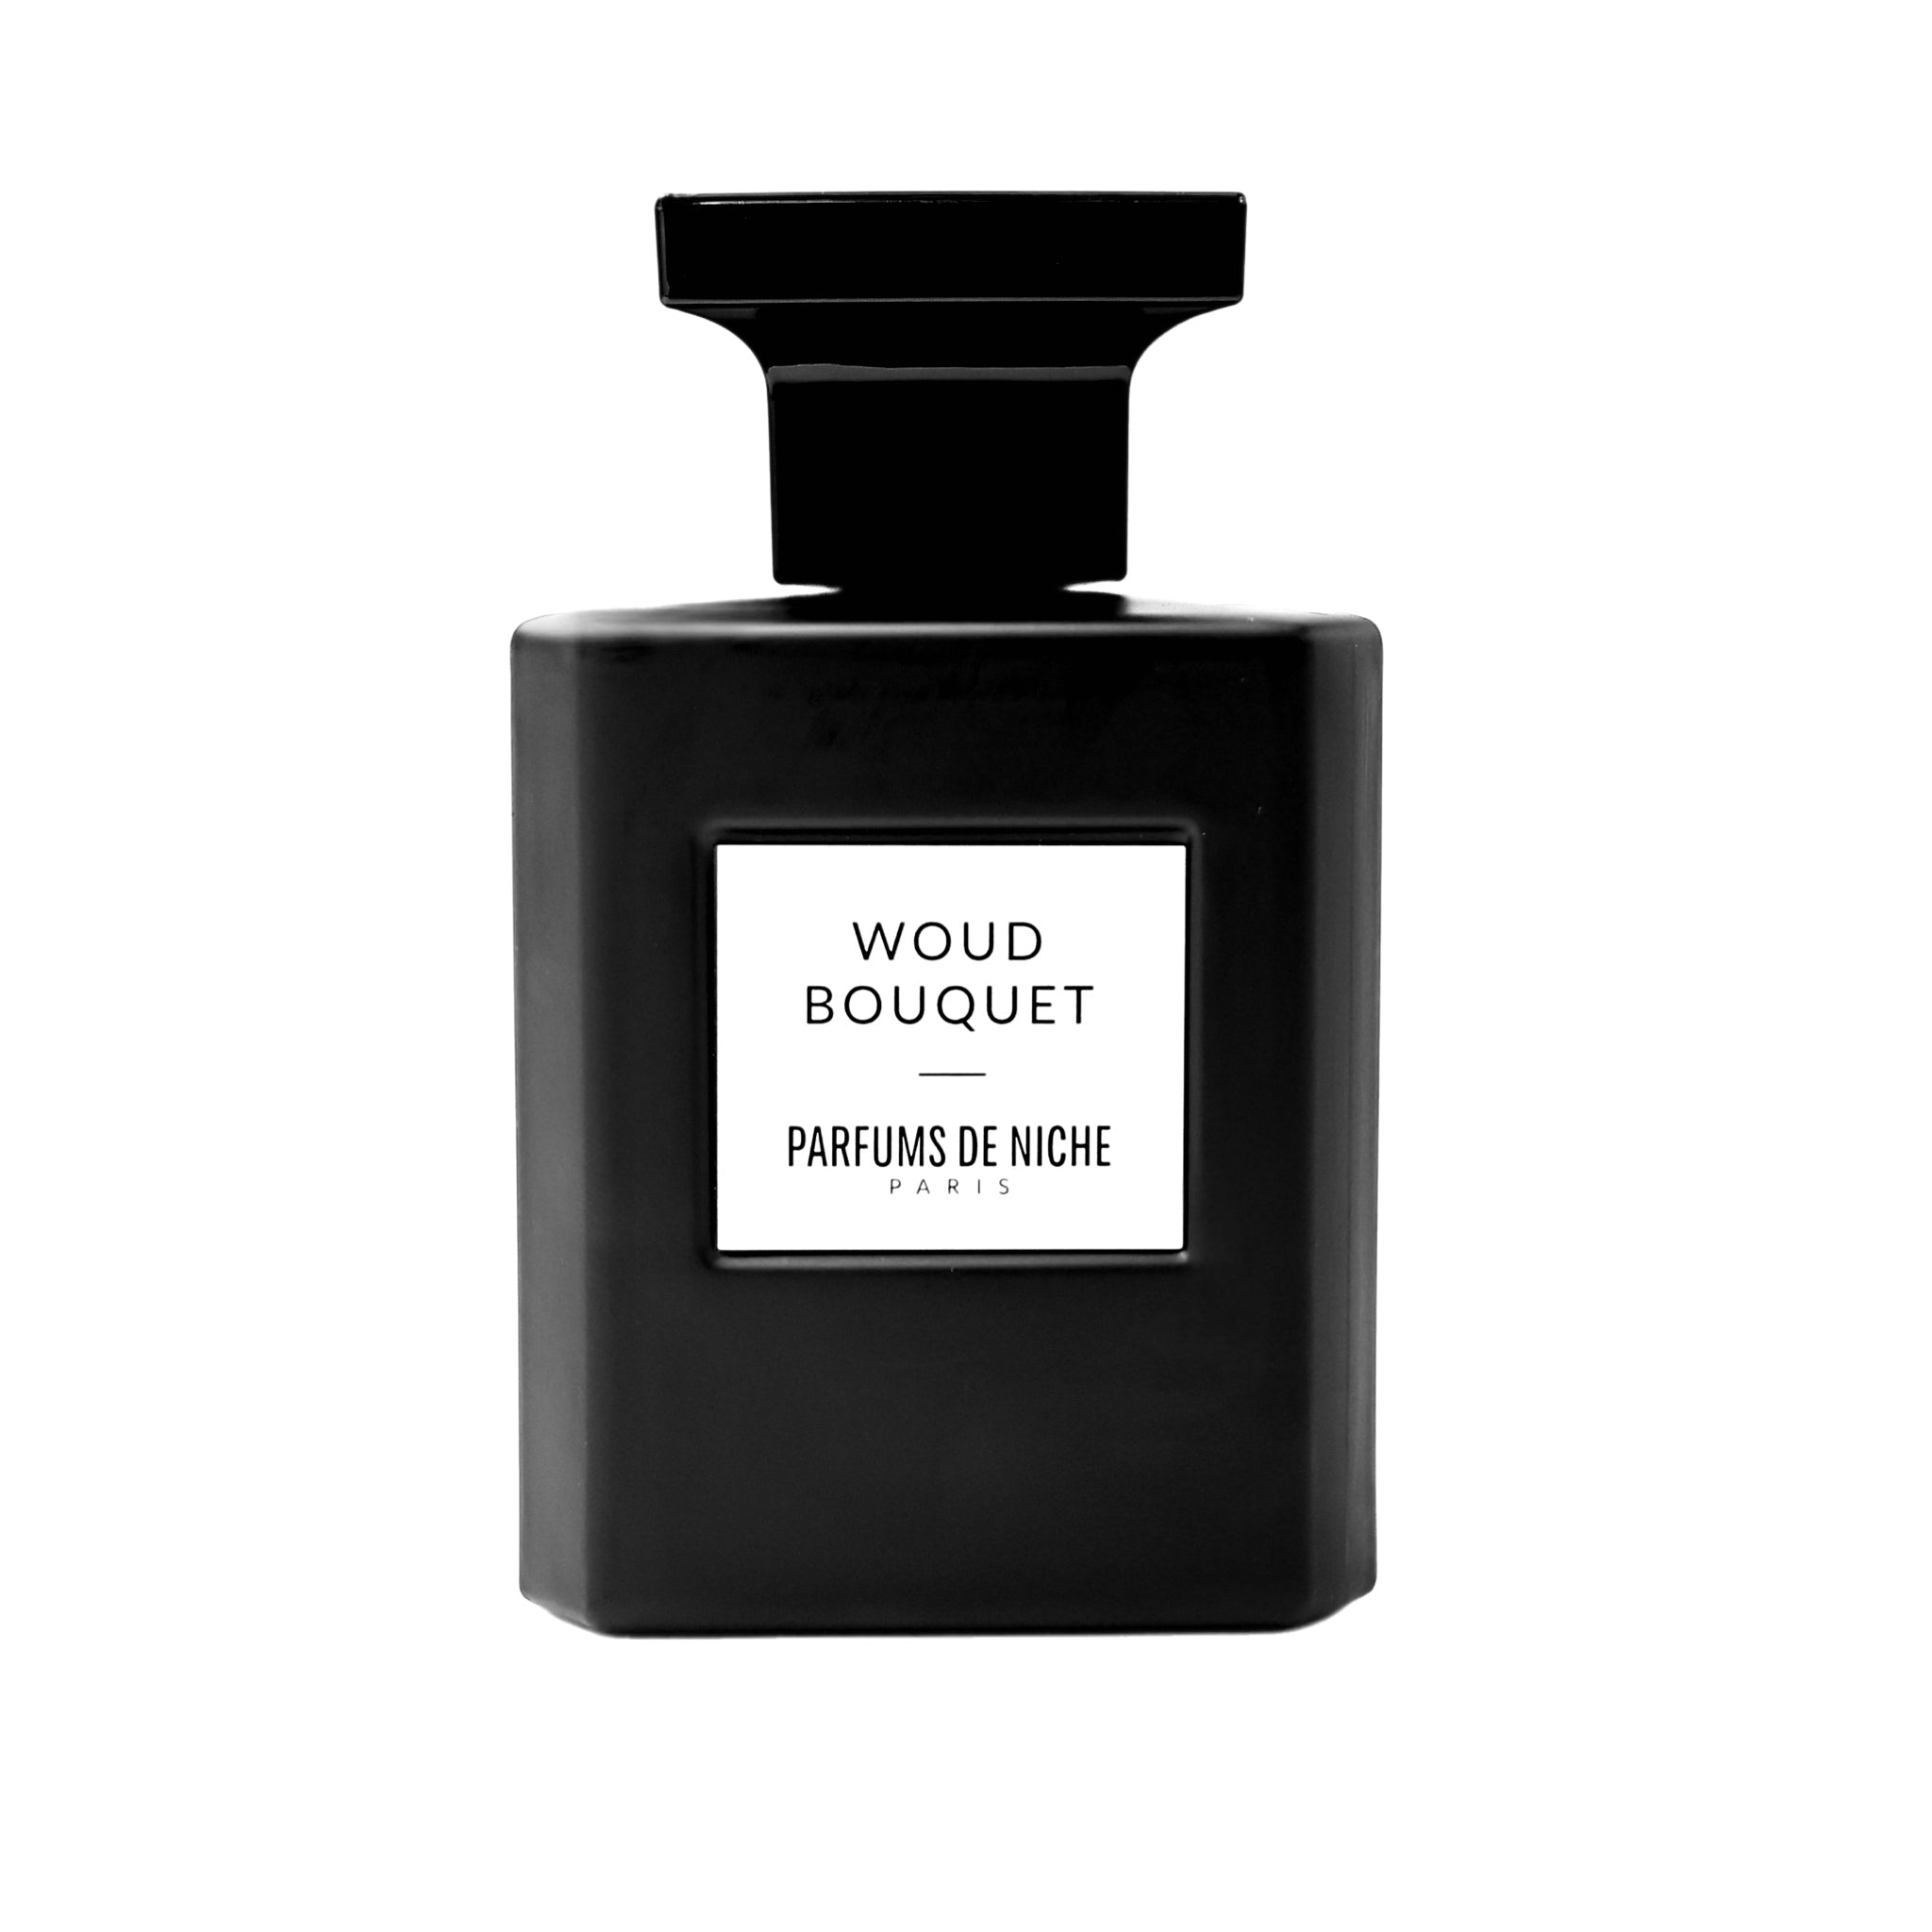 Wood Bouquet - Parfums de Niche Paris 100 ml